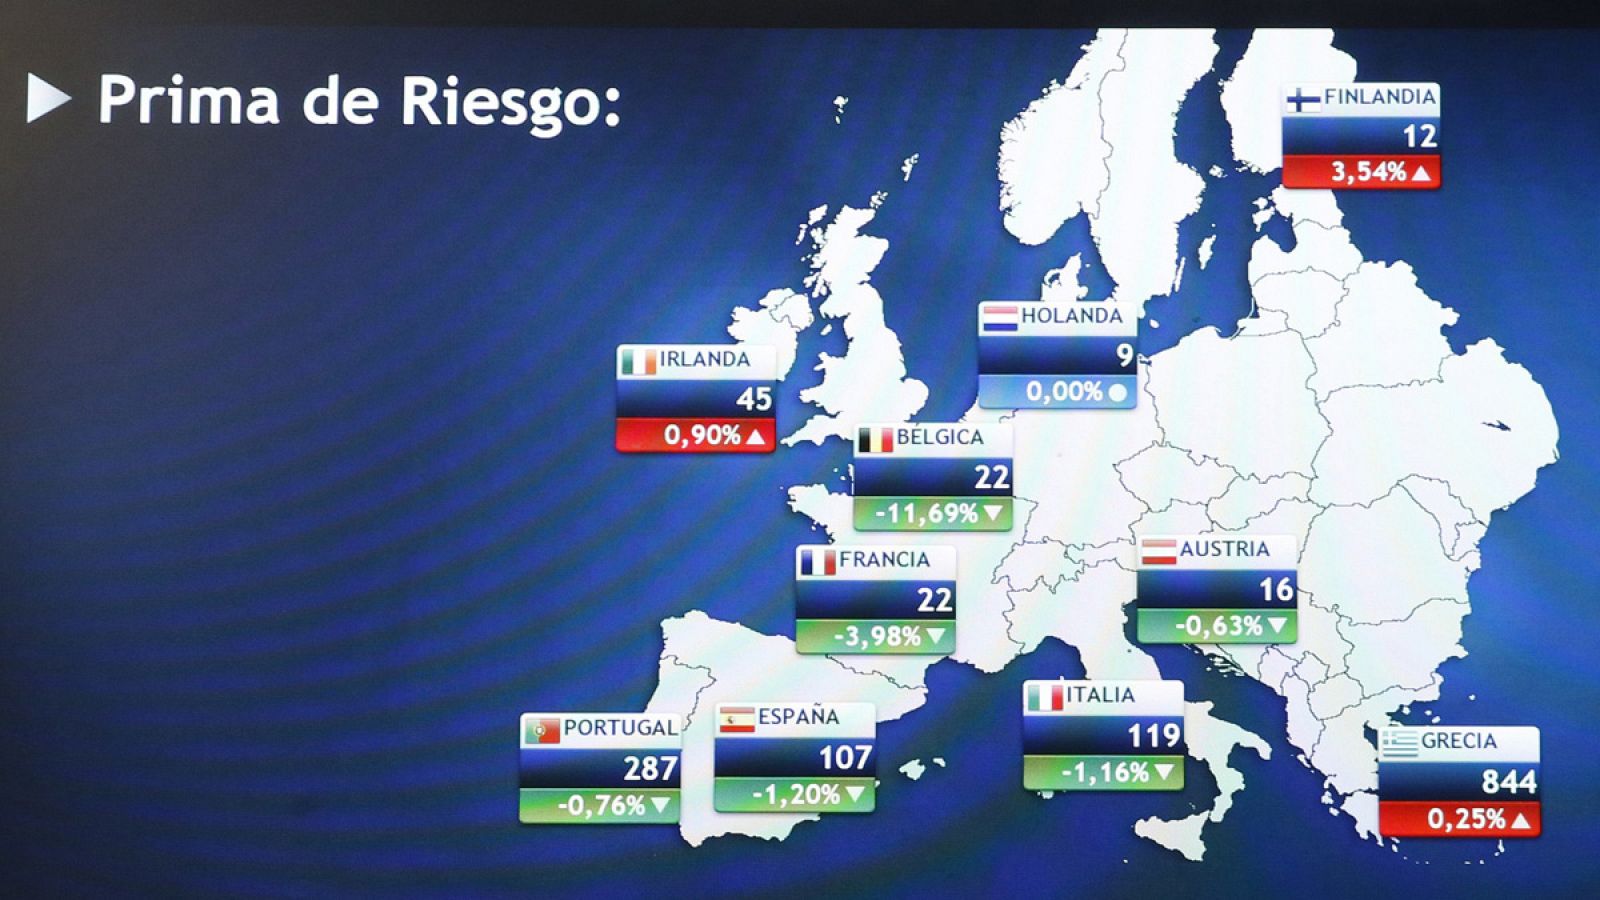 Panel informativo en la Bolsa de Madrid que muestra la prima de riesgo de España y la de otros países de la zona euro